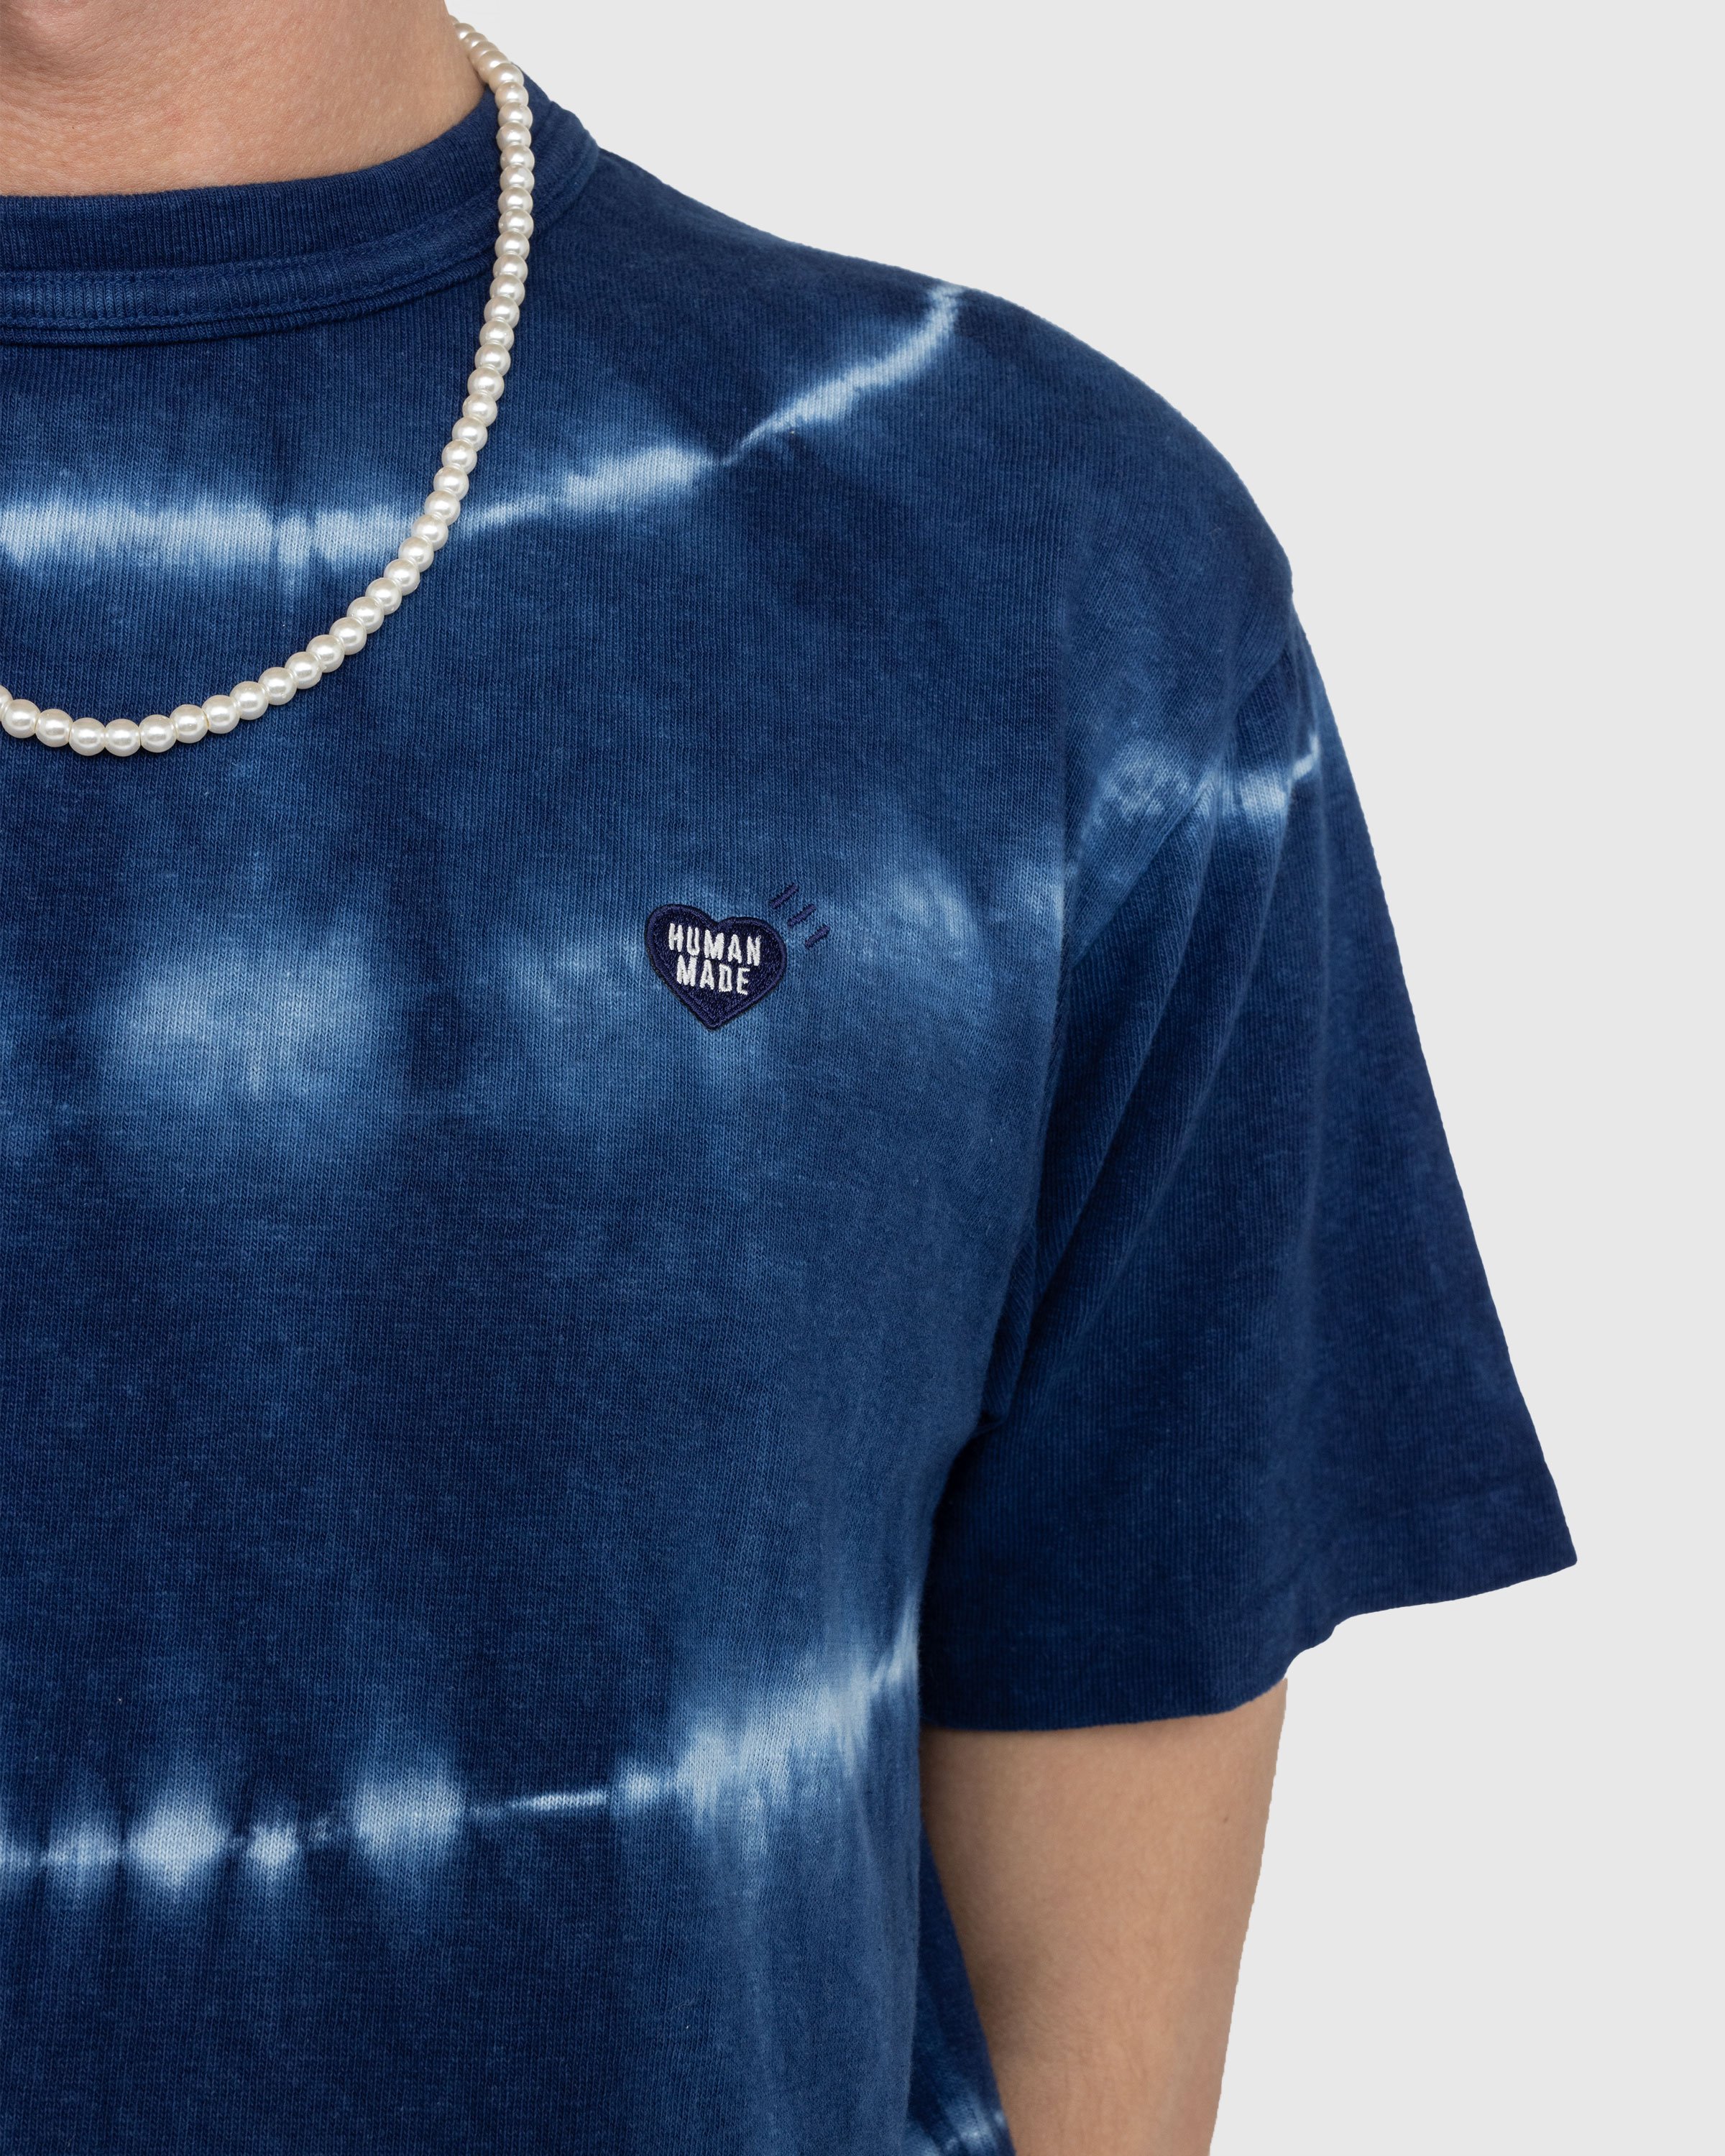 Human Made - Ningen-sei Indigo Dyed T-Shirt #1 Blue - Clothing - Blue - Image 4